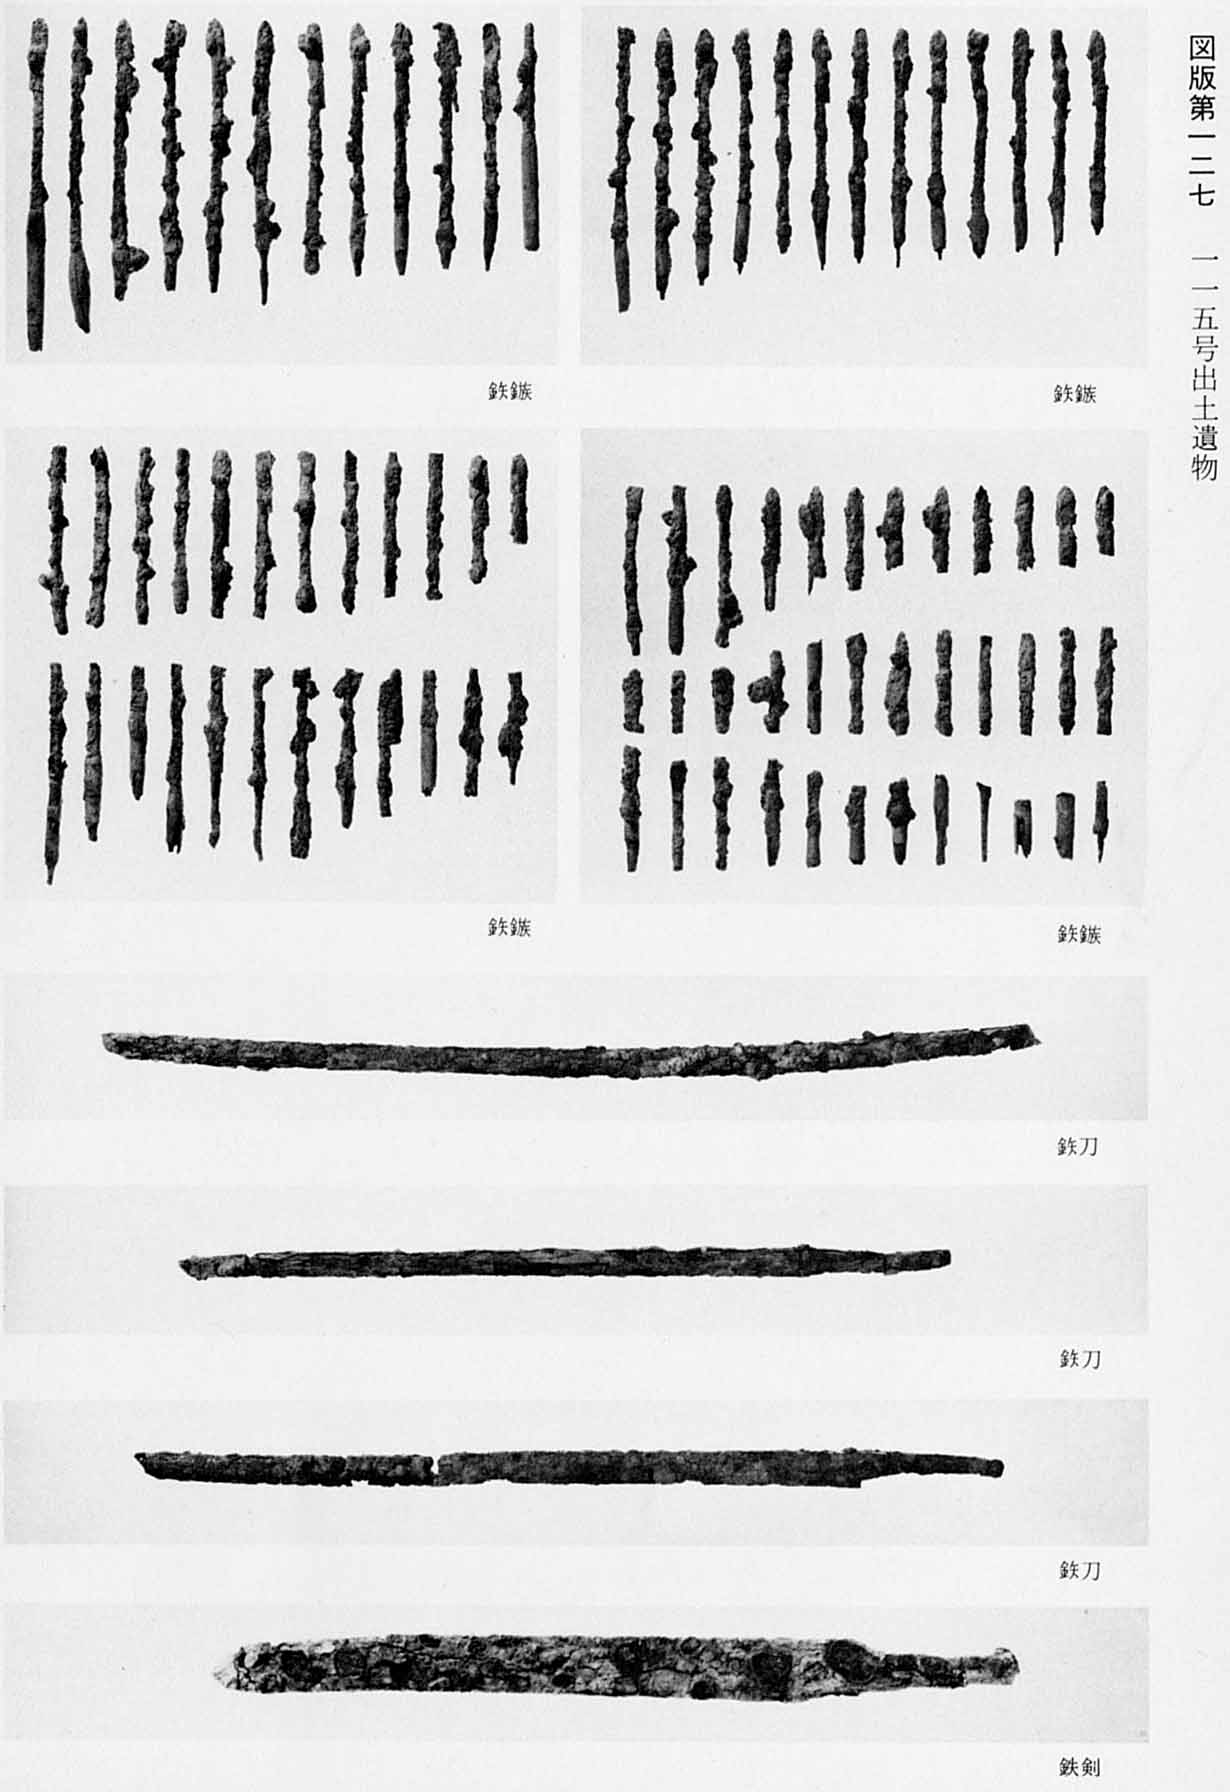 古墳時代の、いくつもの鉄鎹が並べられている4枚の写真と、鉄の刀がある3枚の写真と、鉄の剣が置かれている写真がある、図版127 115号出土遺物のモノクロ写真